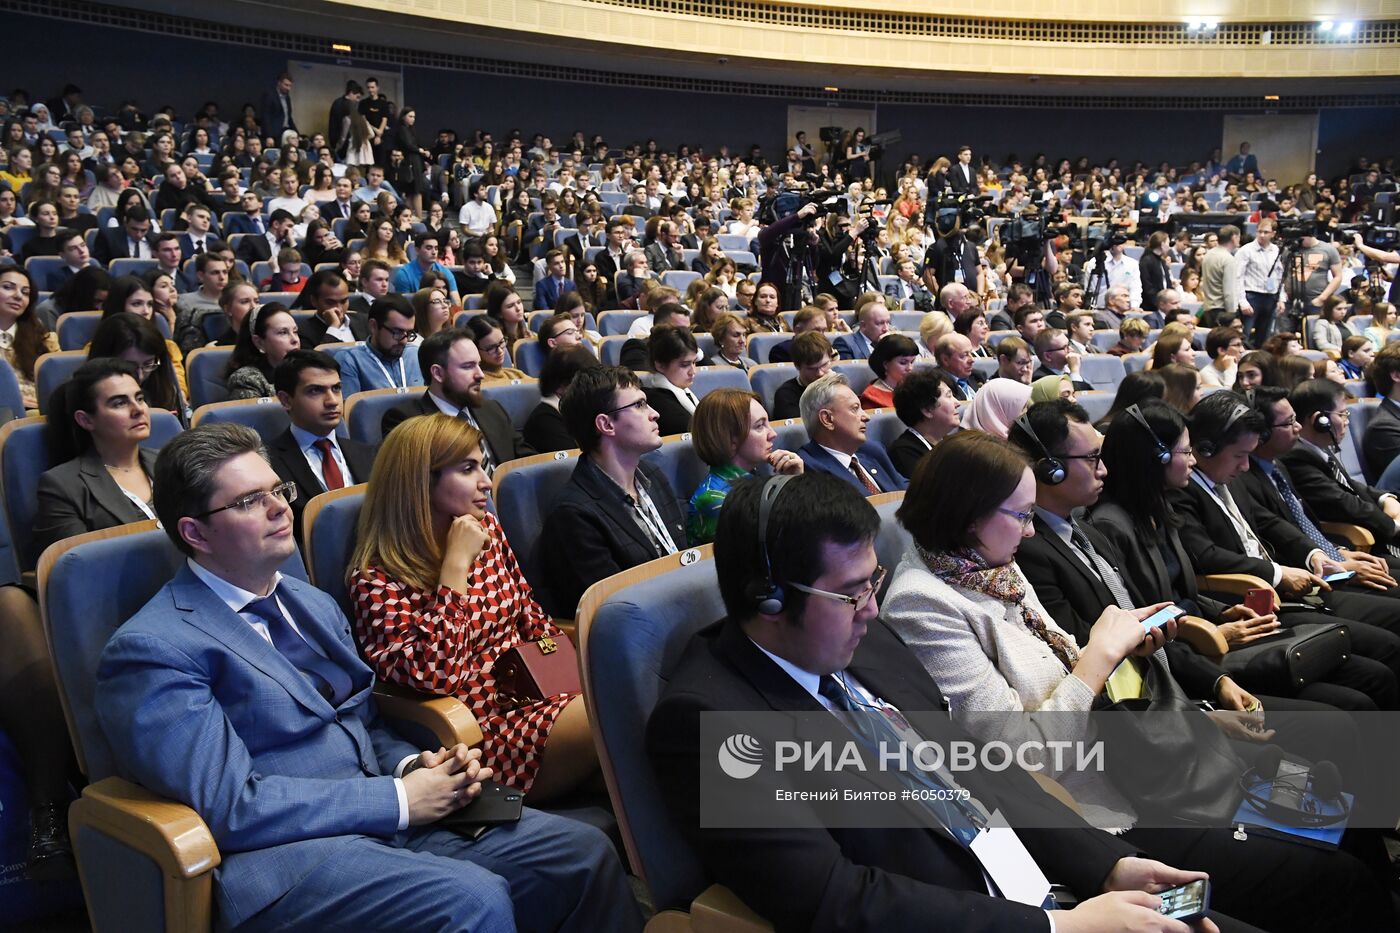 XII Конвент Российской ассоциации международных исследований